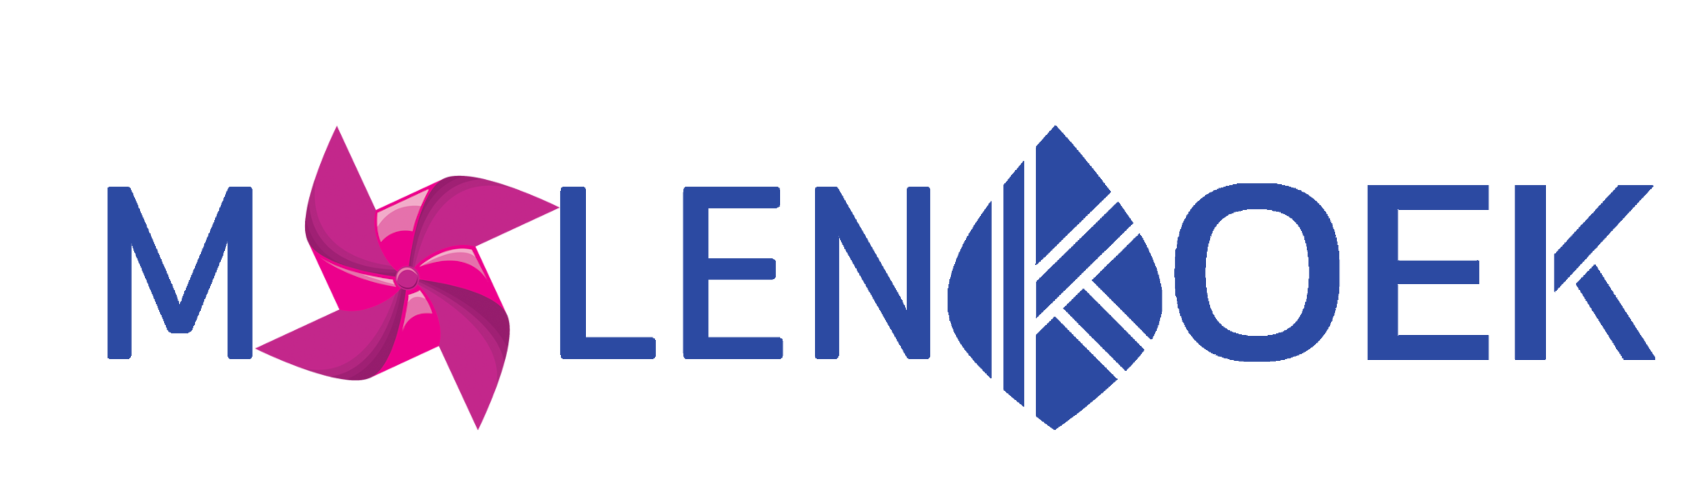 Molenkoek logo